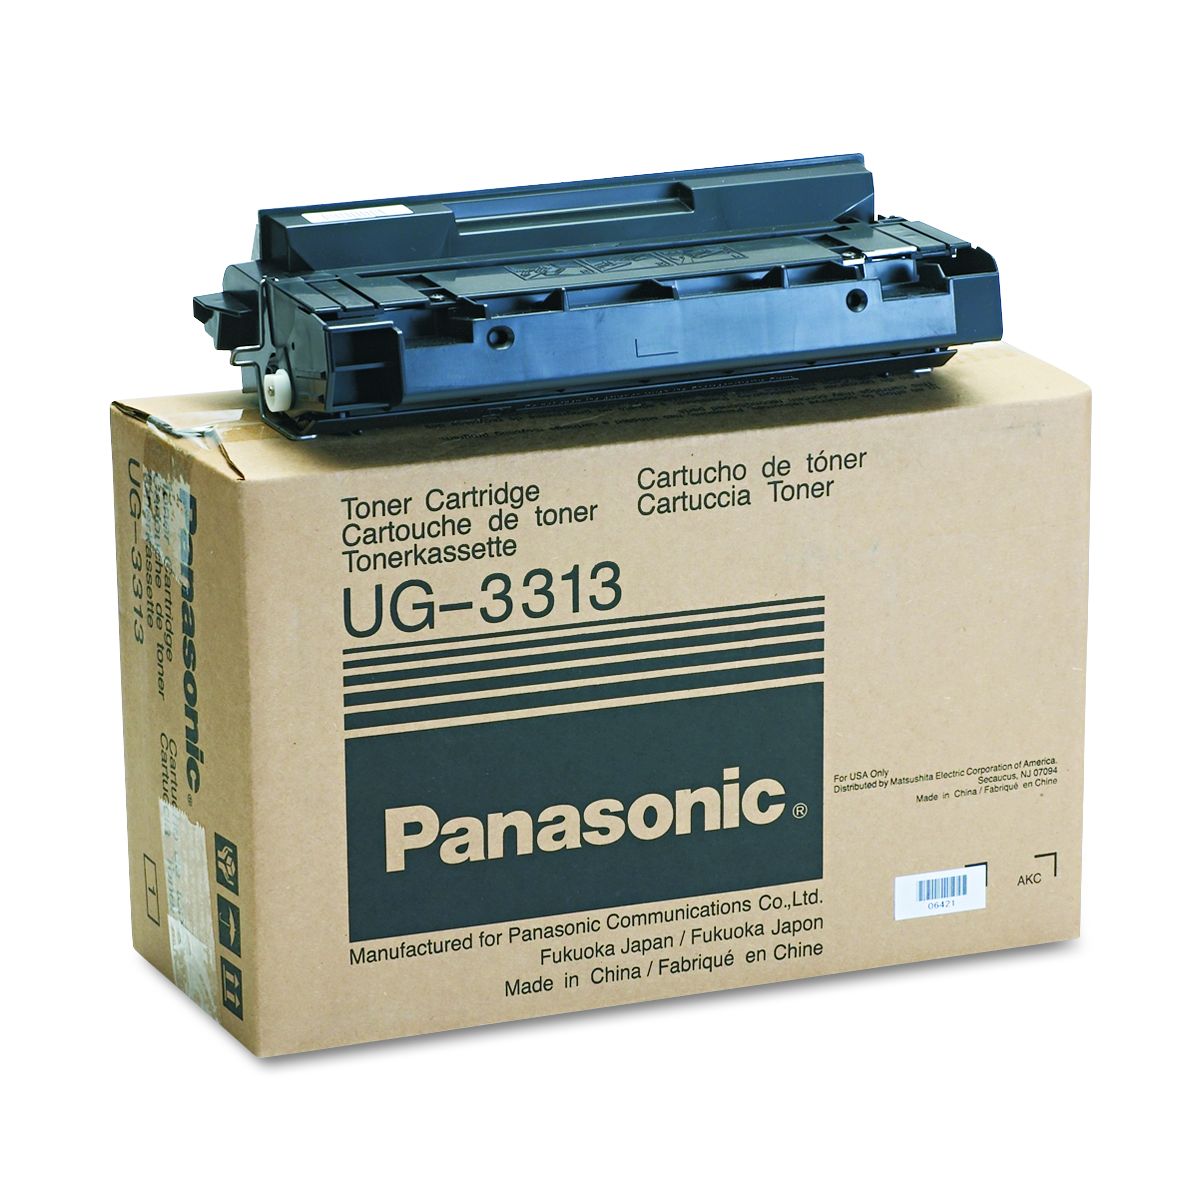 Заправка и восстановление картриджей - Panasonic UG-3313-AU